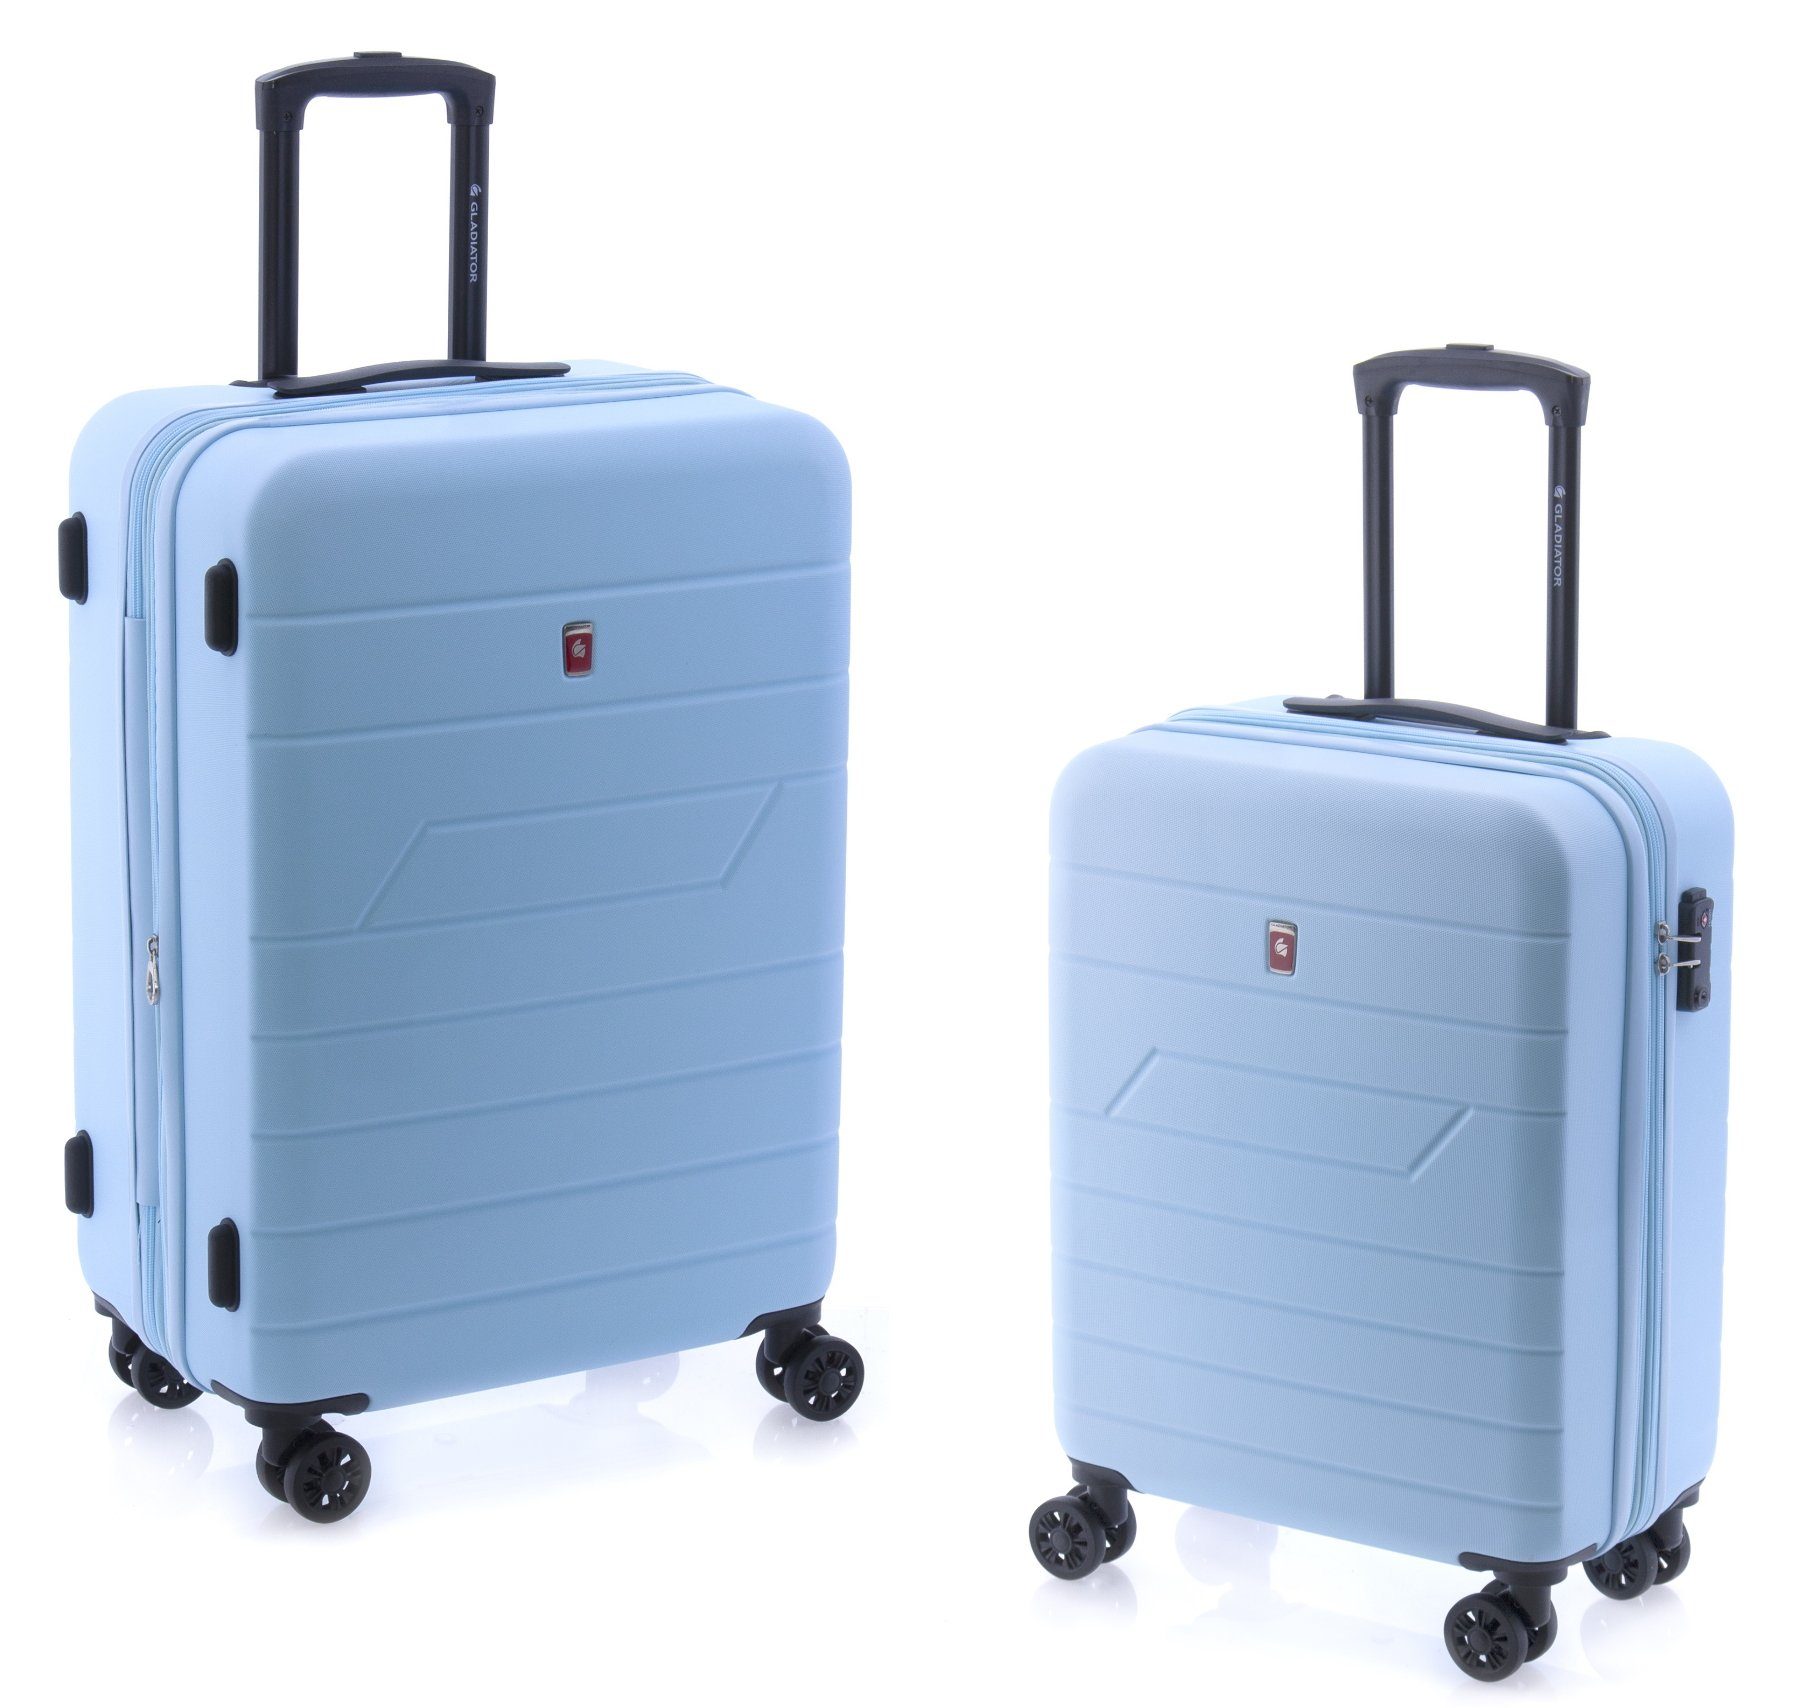 GLADIATOR Hartschalen-Trolley Koffer-Set 2-teilig - 55 und 65 cm, 4 Rollen, TSA-Schloss, Dehnfalte, Farben: blau, schwarz, rot, hellblau, minzgrün, gelb